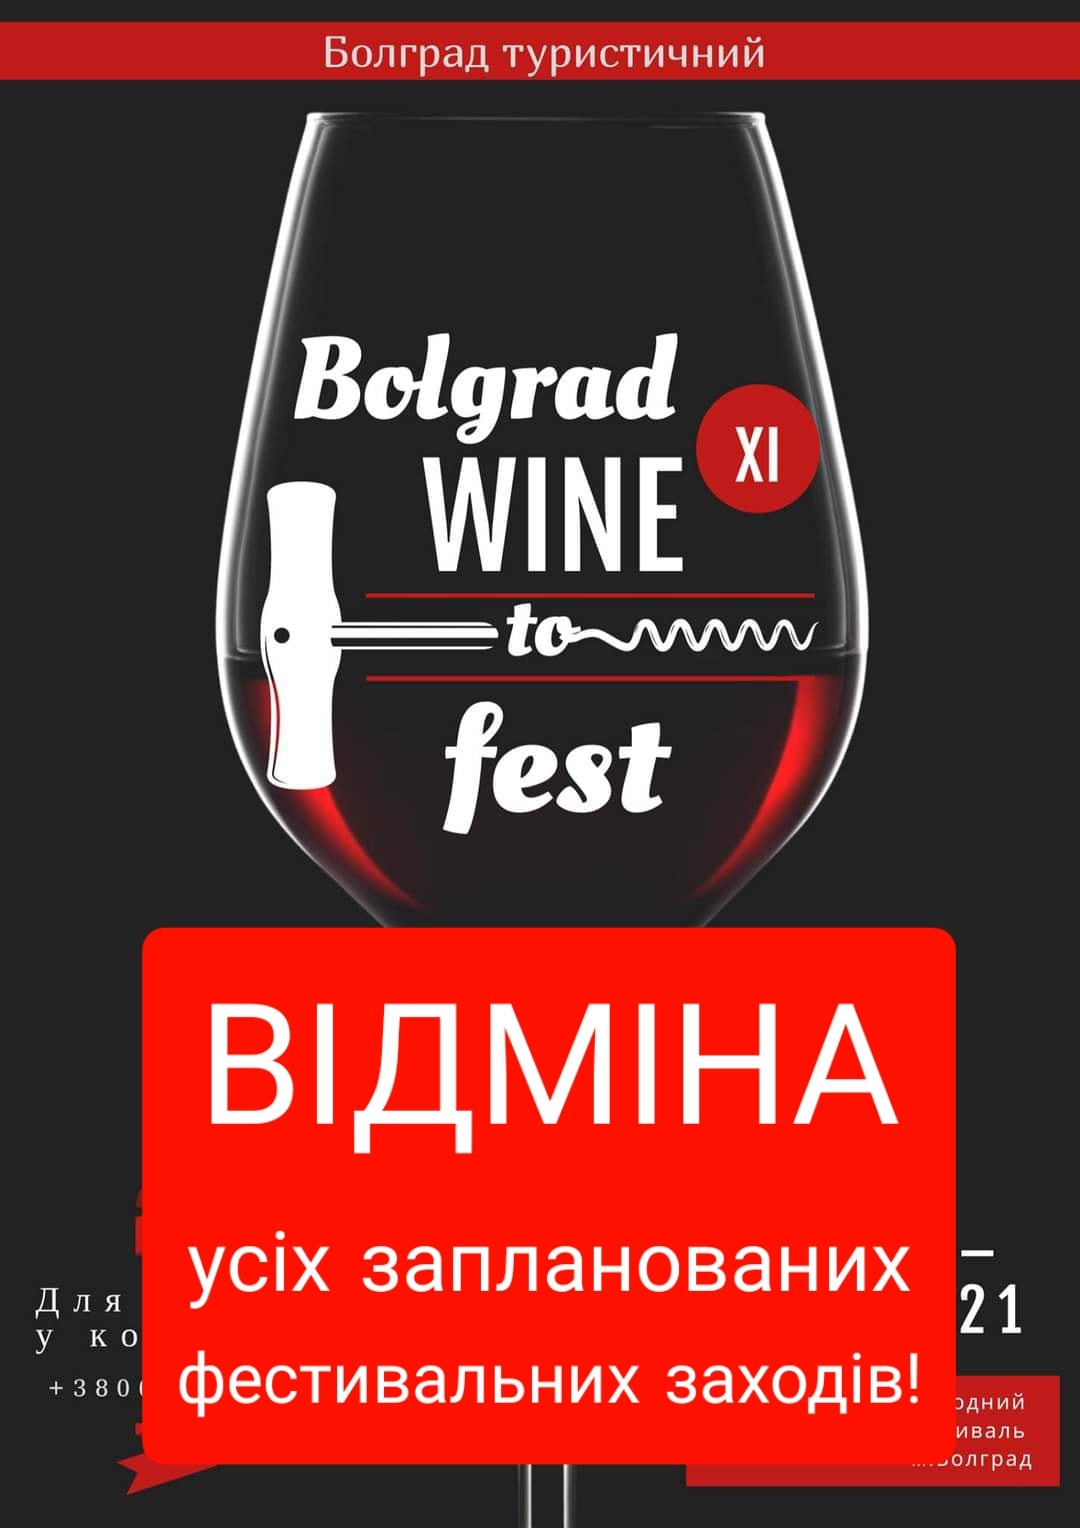 Международный фестиваль «BOLGRAD WINE FEST 2021» не состоится. Дегустационная комиссия также не будет работать